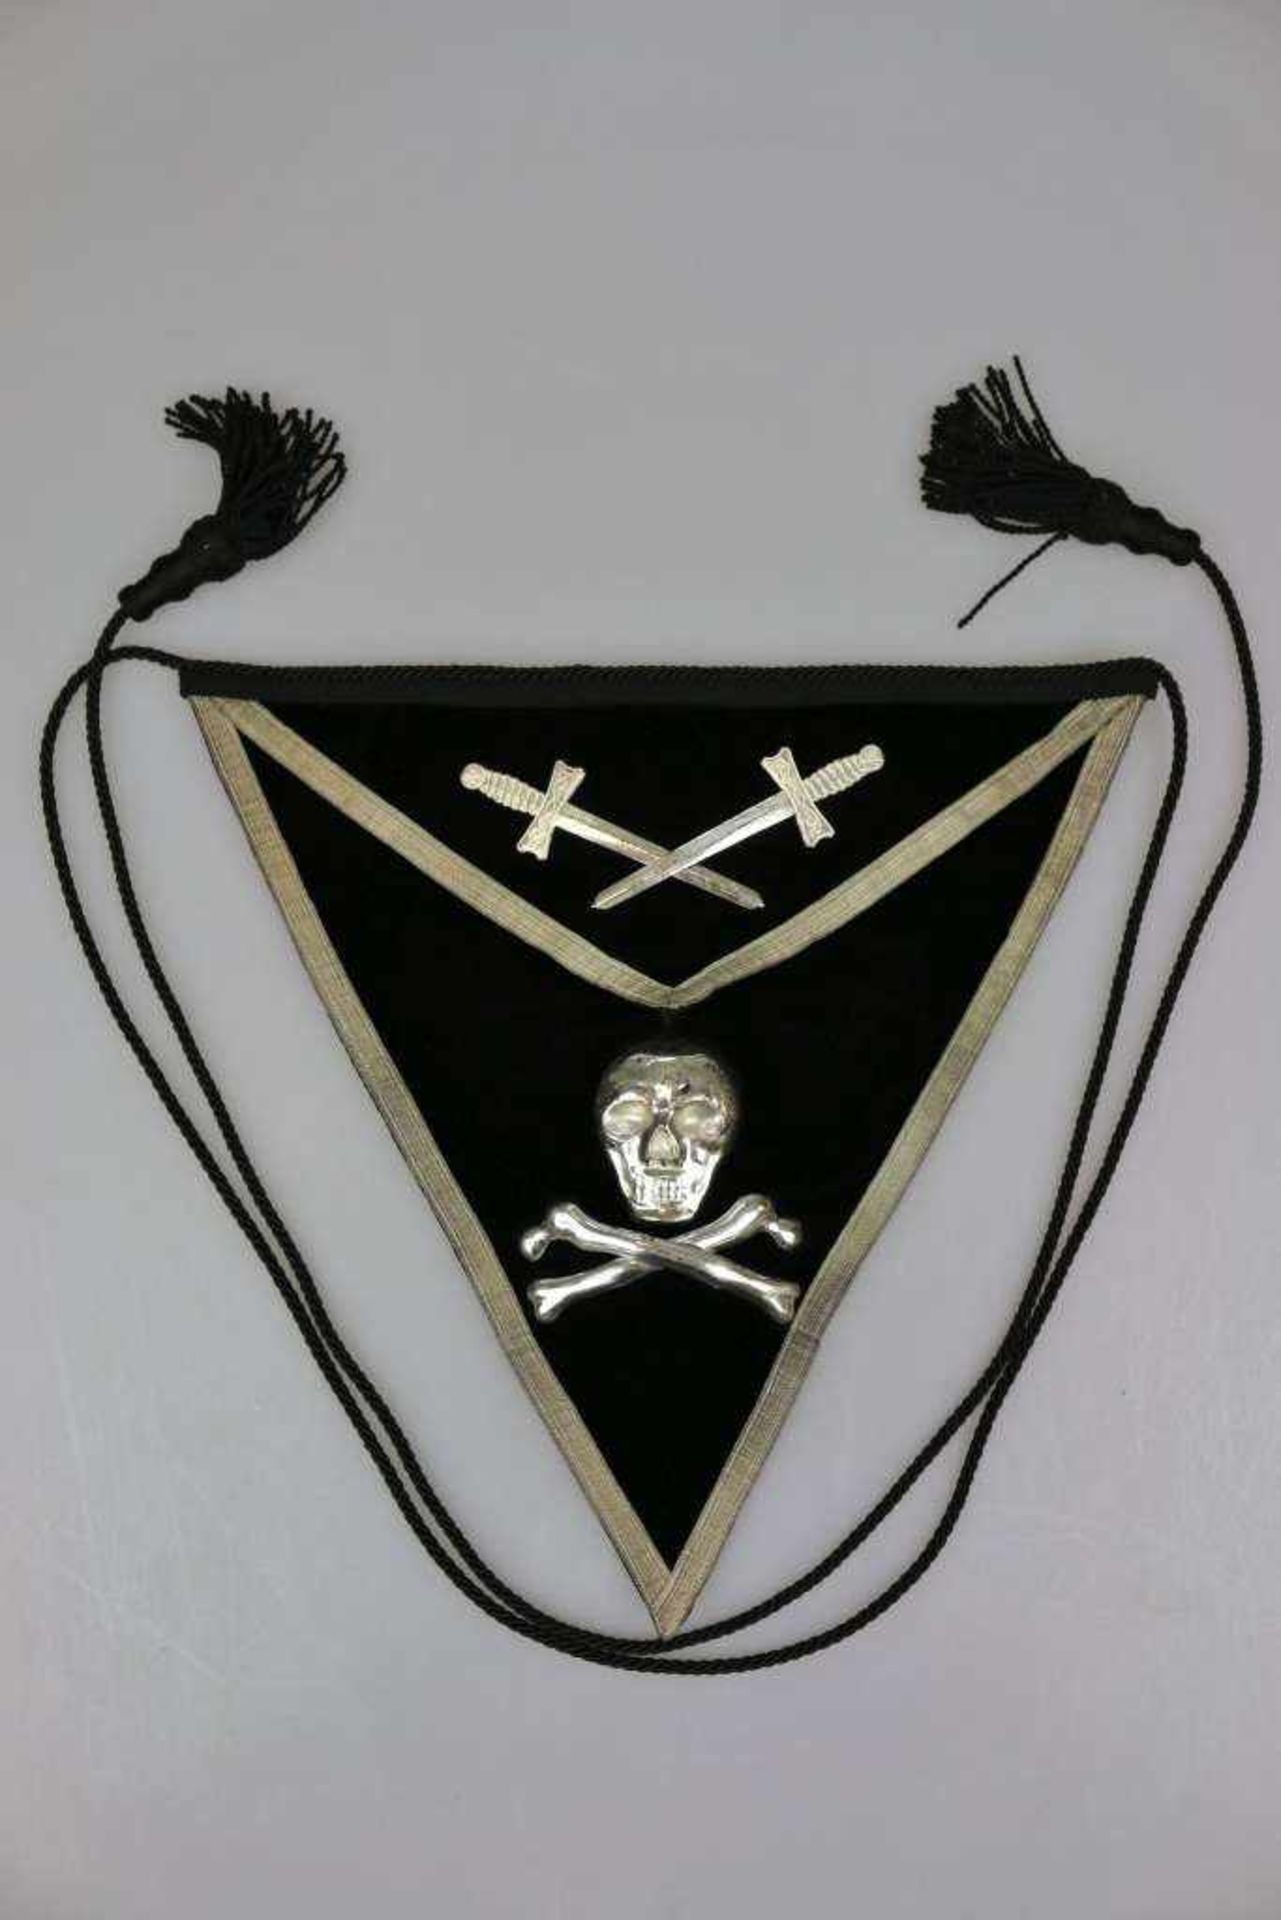 Stoffwimpel einer US-Loge, schwarzes Dreieck mit aufgelegtem Metall-Applikationen (Totenkopf und